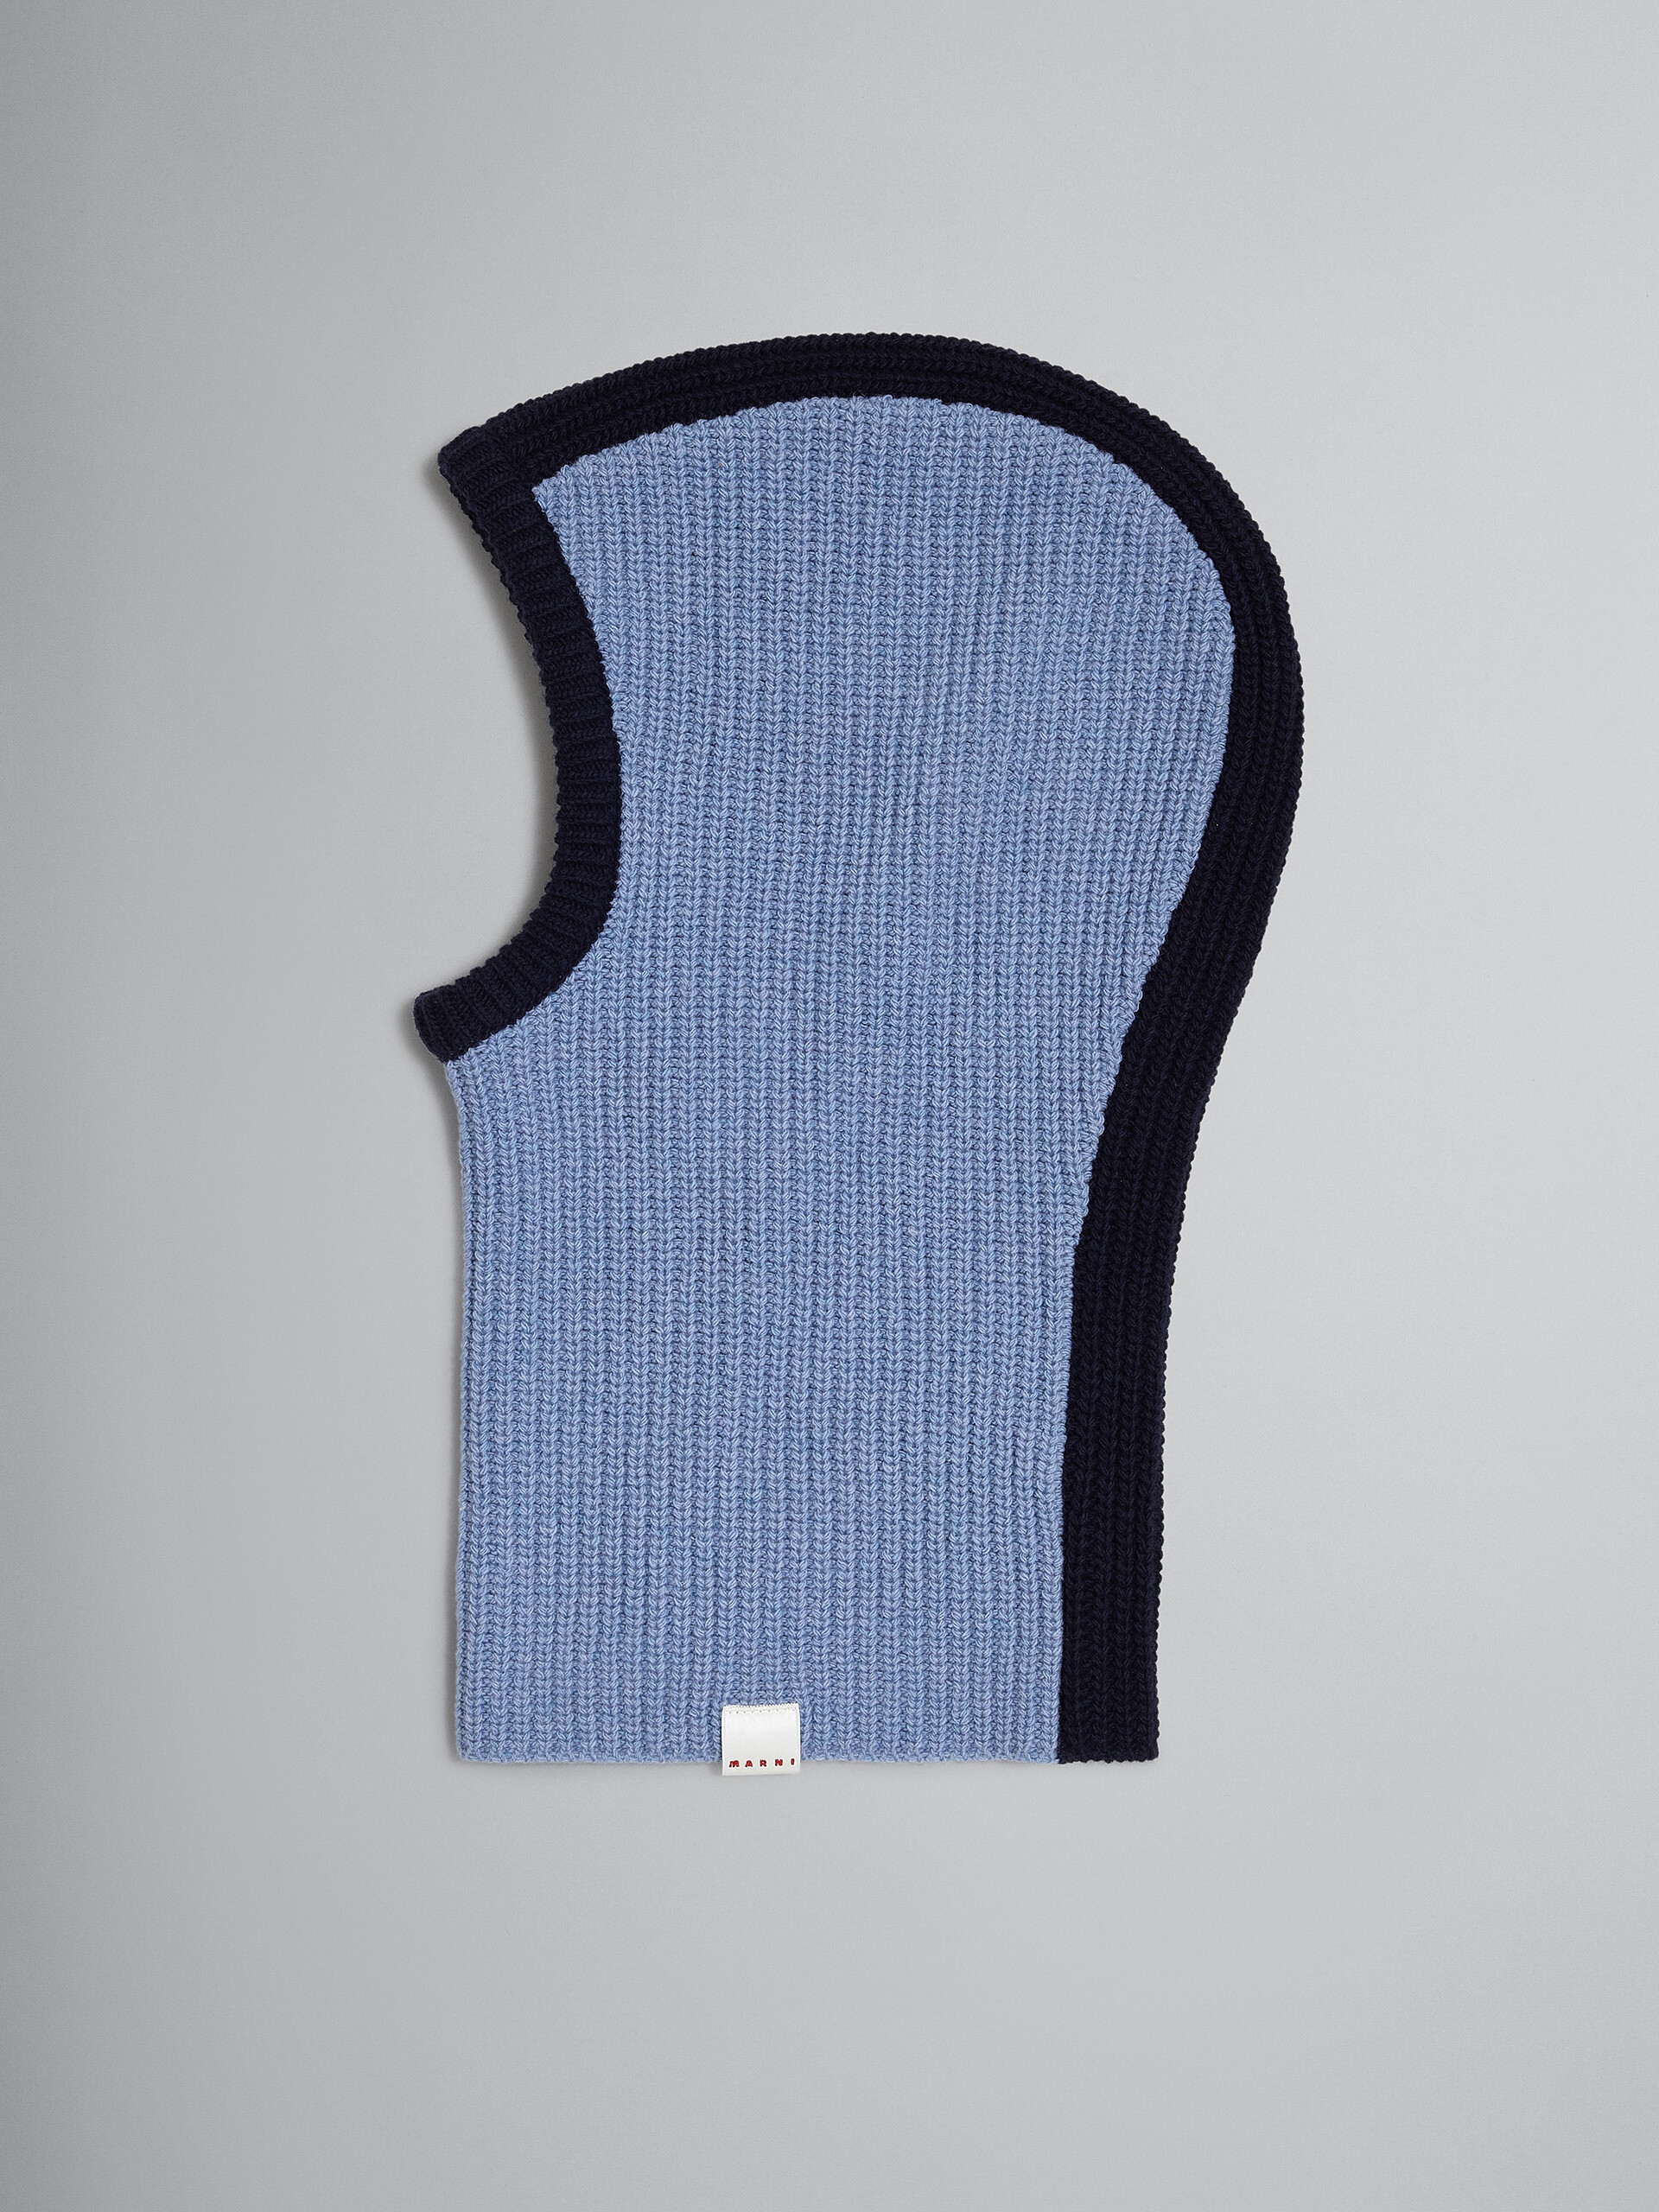 Cagoule en laine Shetland bleu pâle - Autres accessoires - Image 1